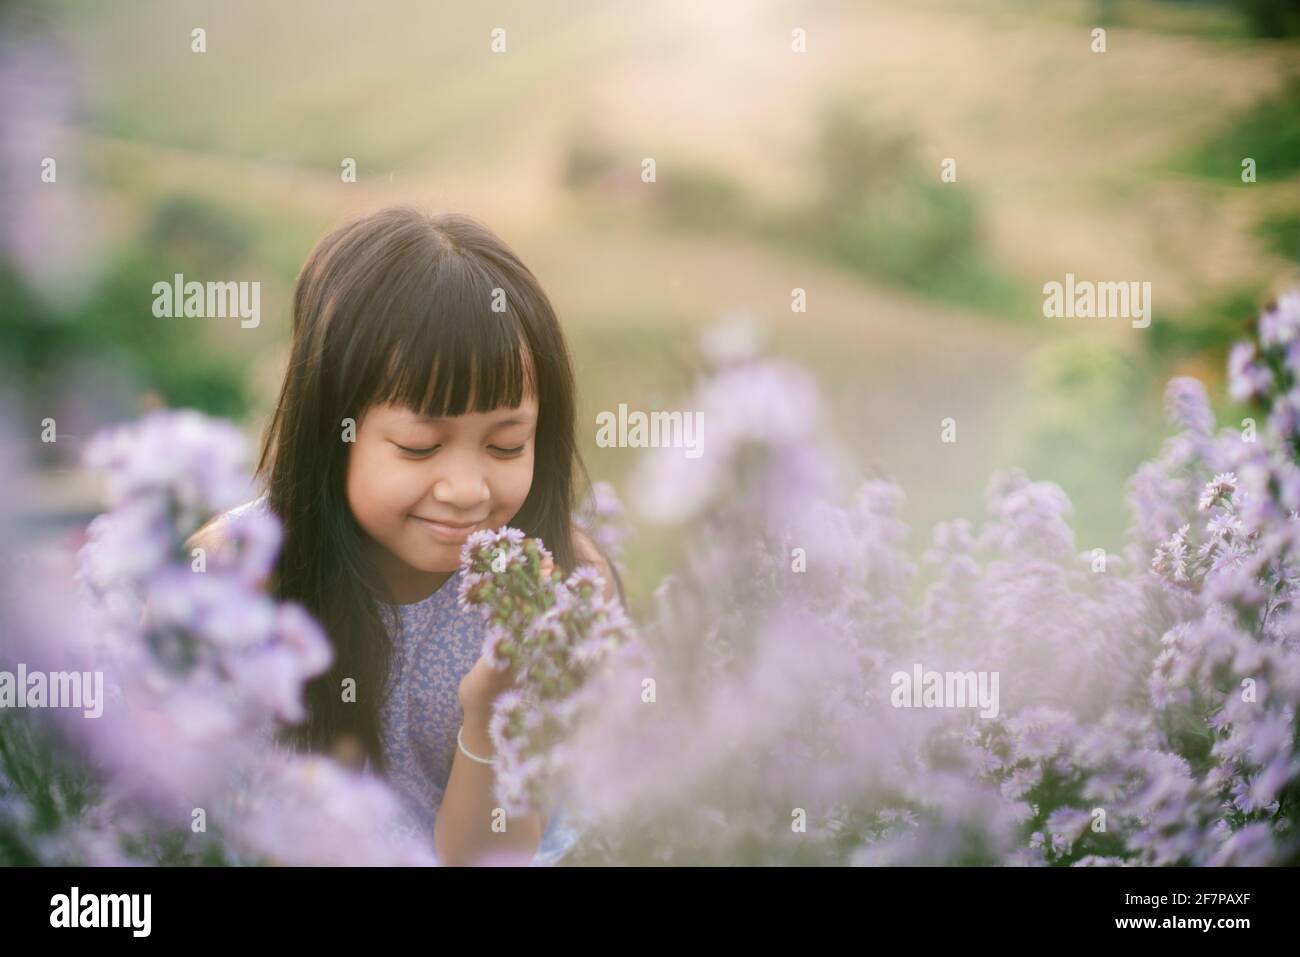 Asiatische kleines Kind Mädchen lächelt in Blumenfeldern Stockfoto